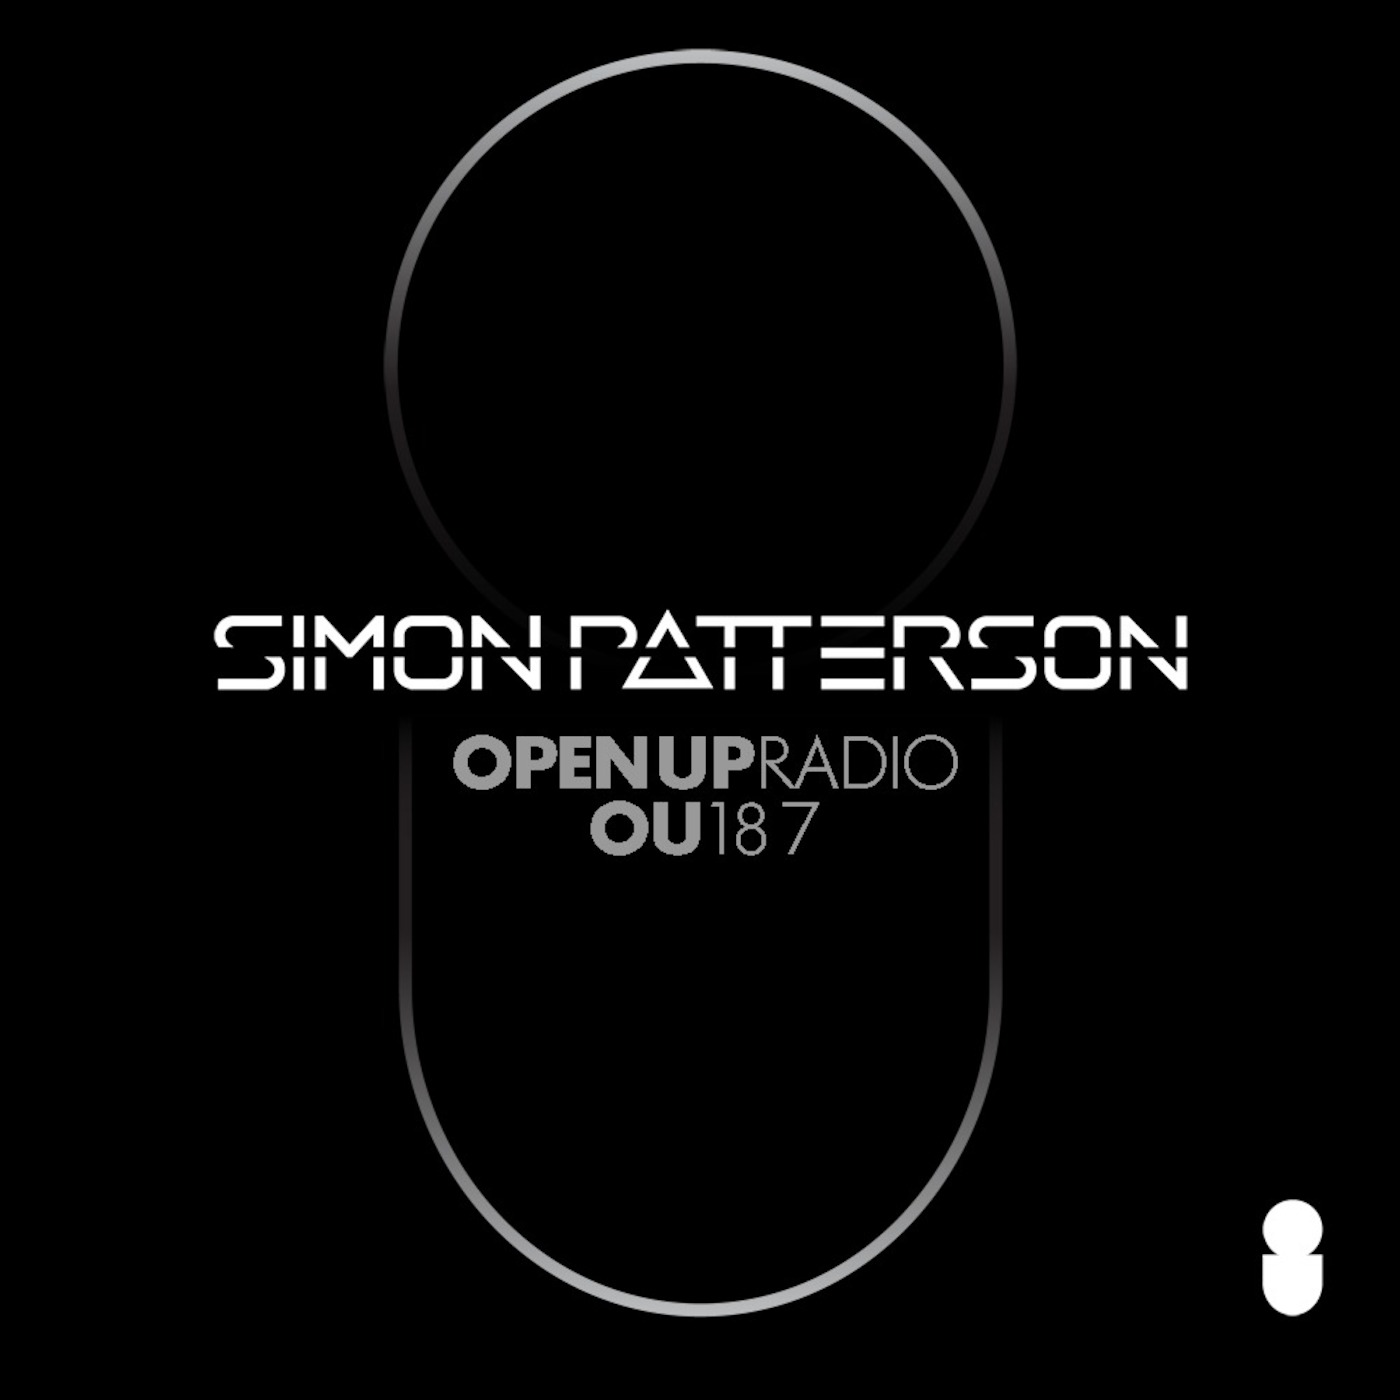 Simon Patterson - Open Up - 187